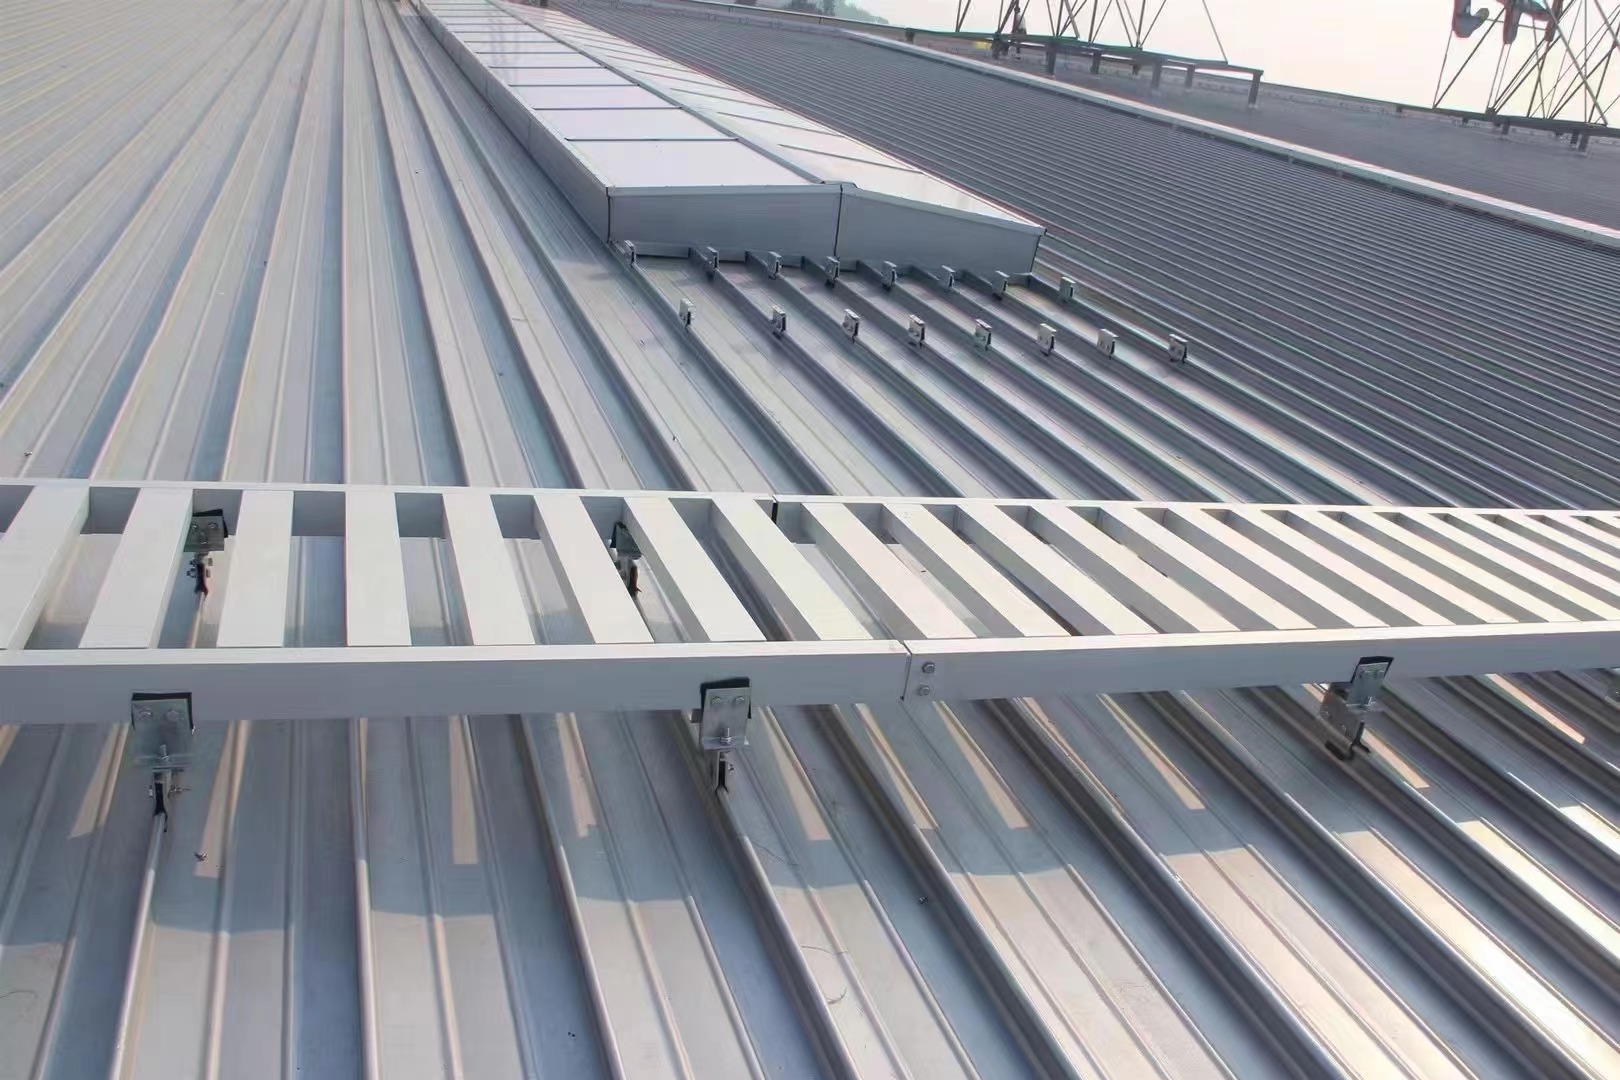 铝镁锰屋面板铺设完成后可以随意行走吗？